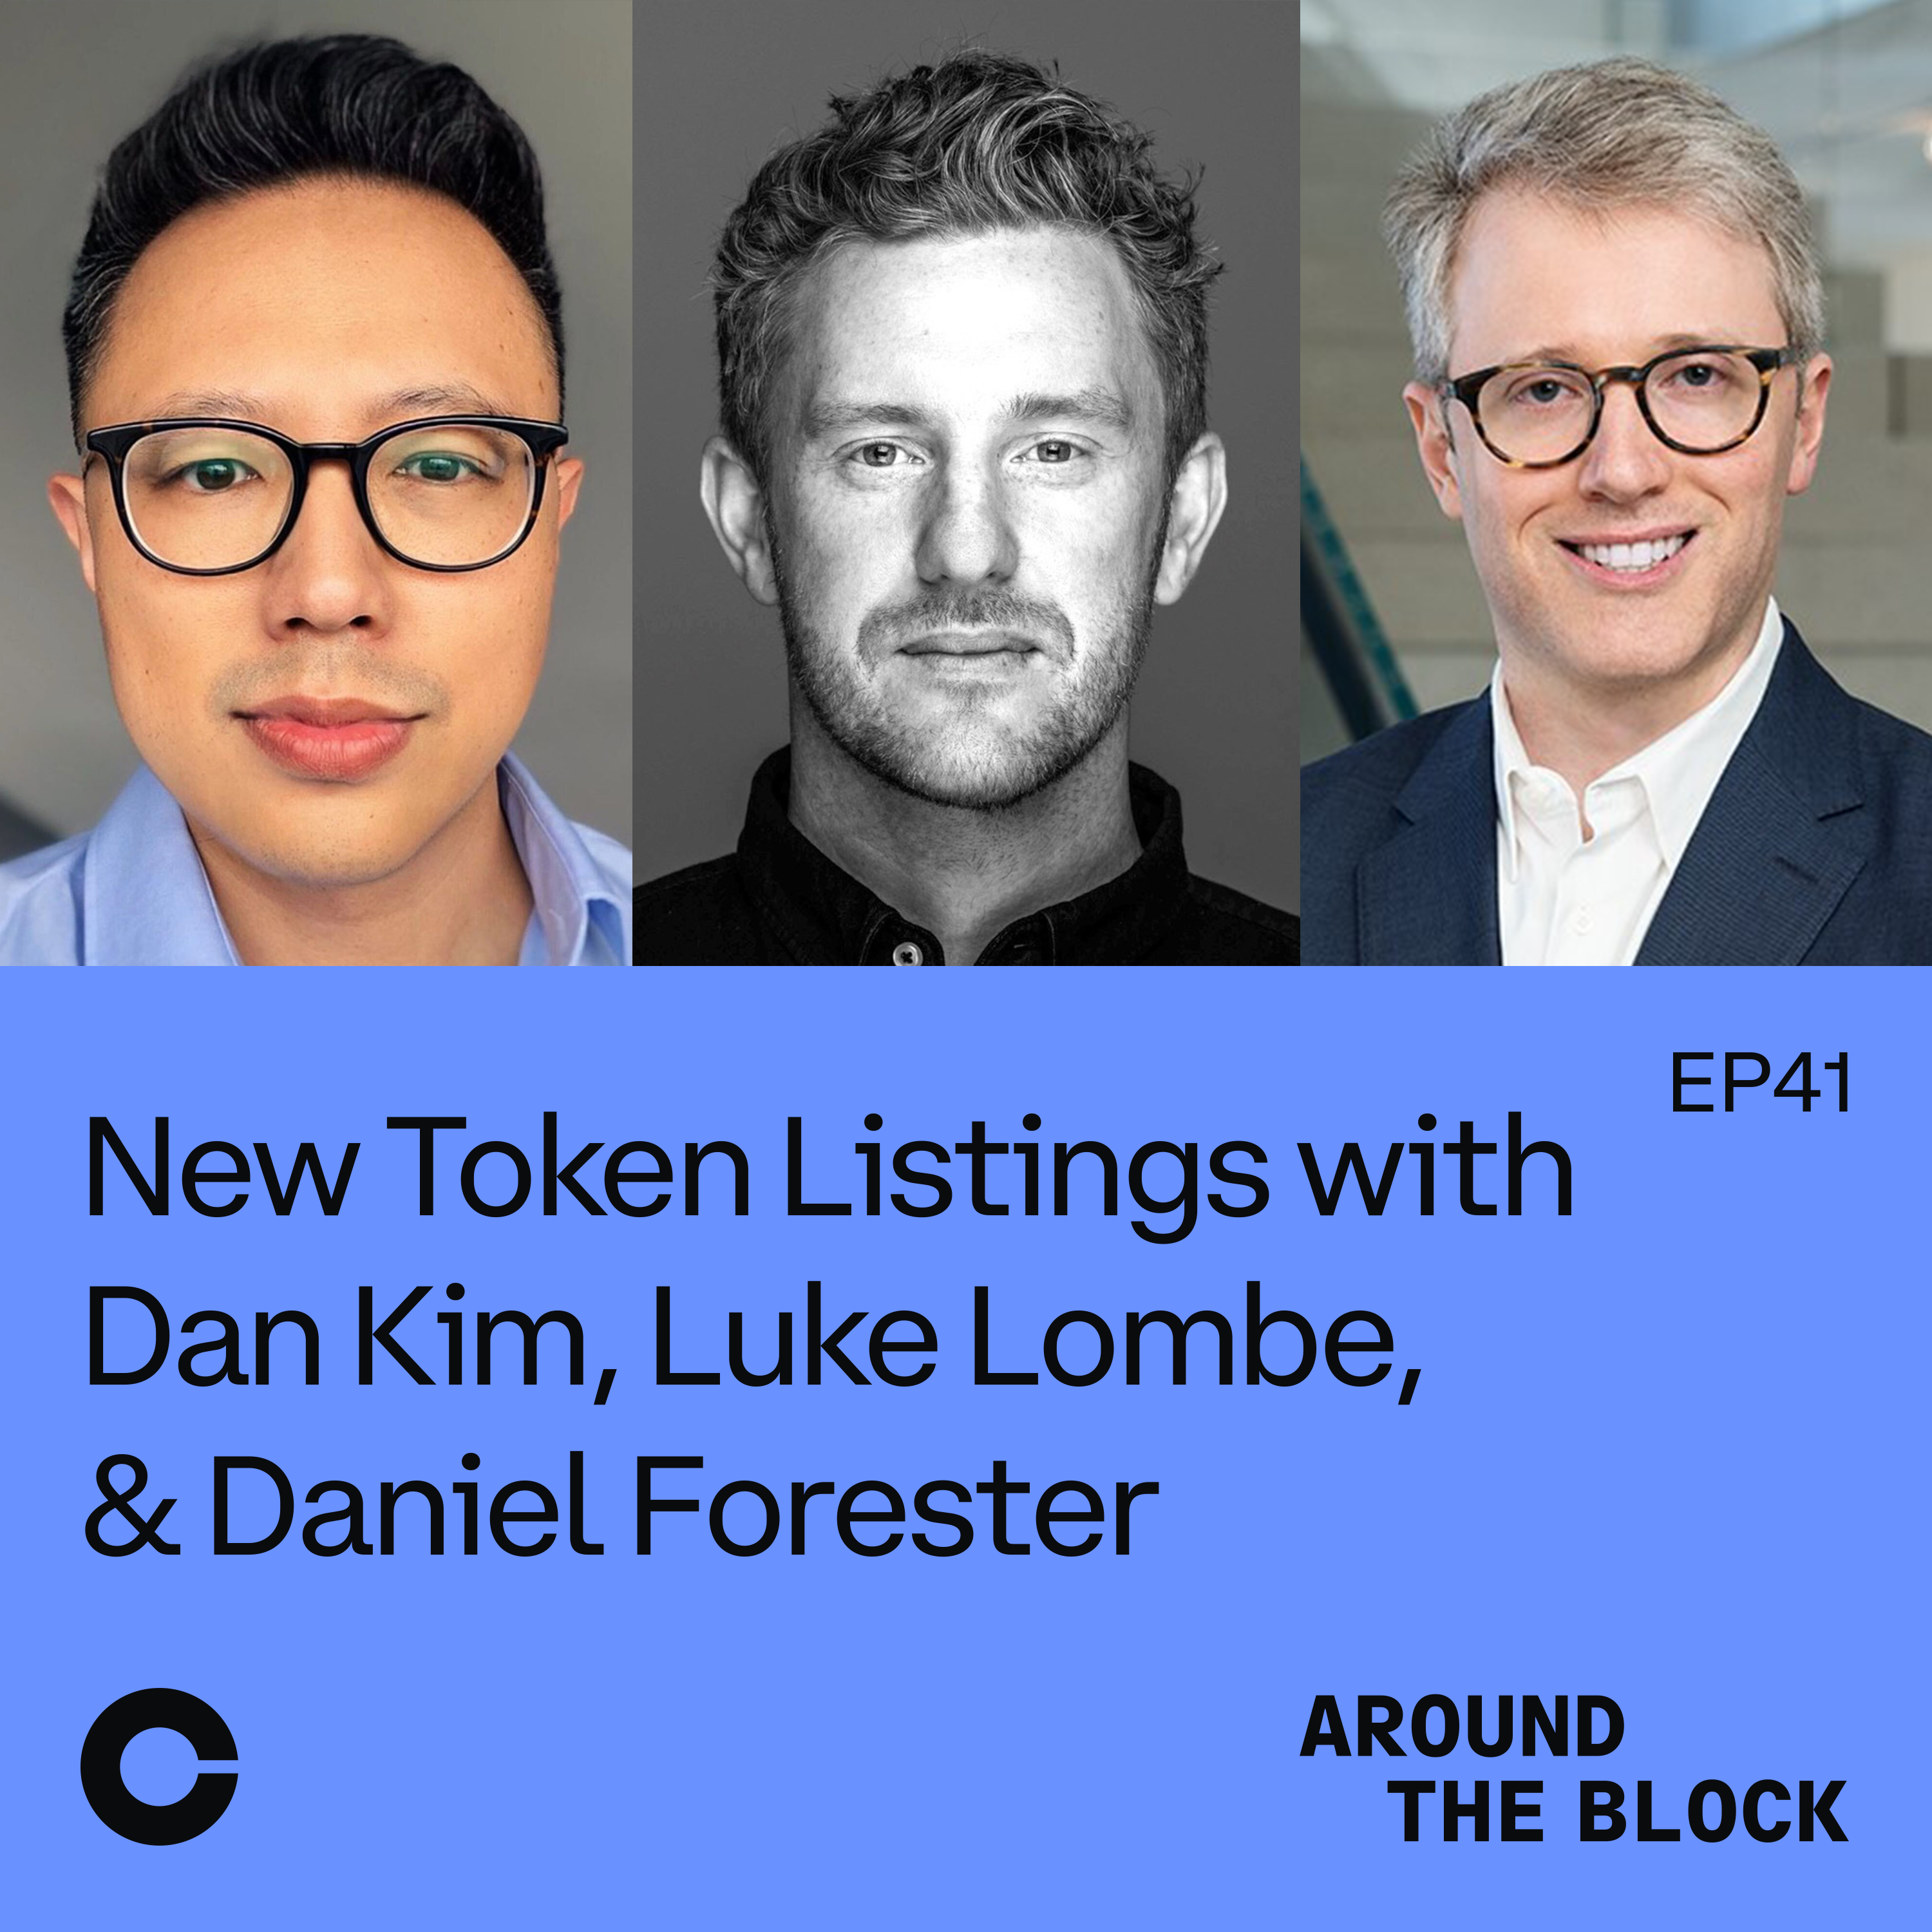 New Token Listings with Dan Kim, Luke Lombe & Daniel Forester